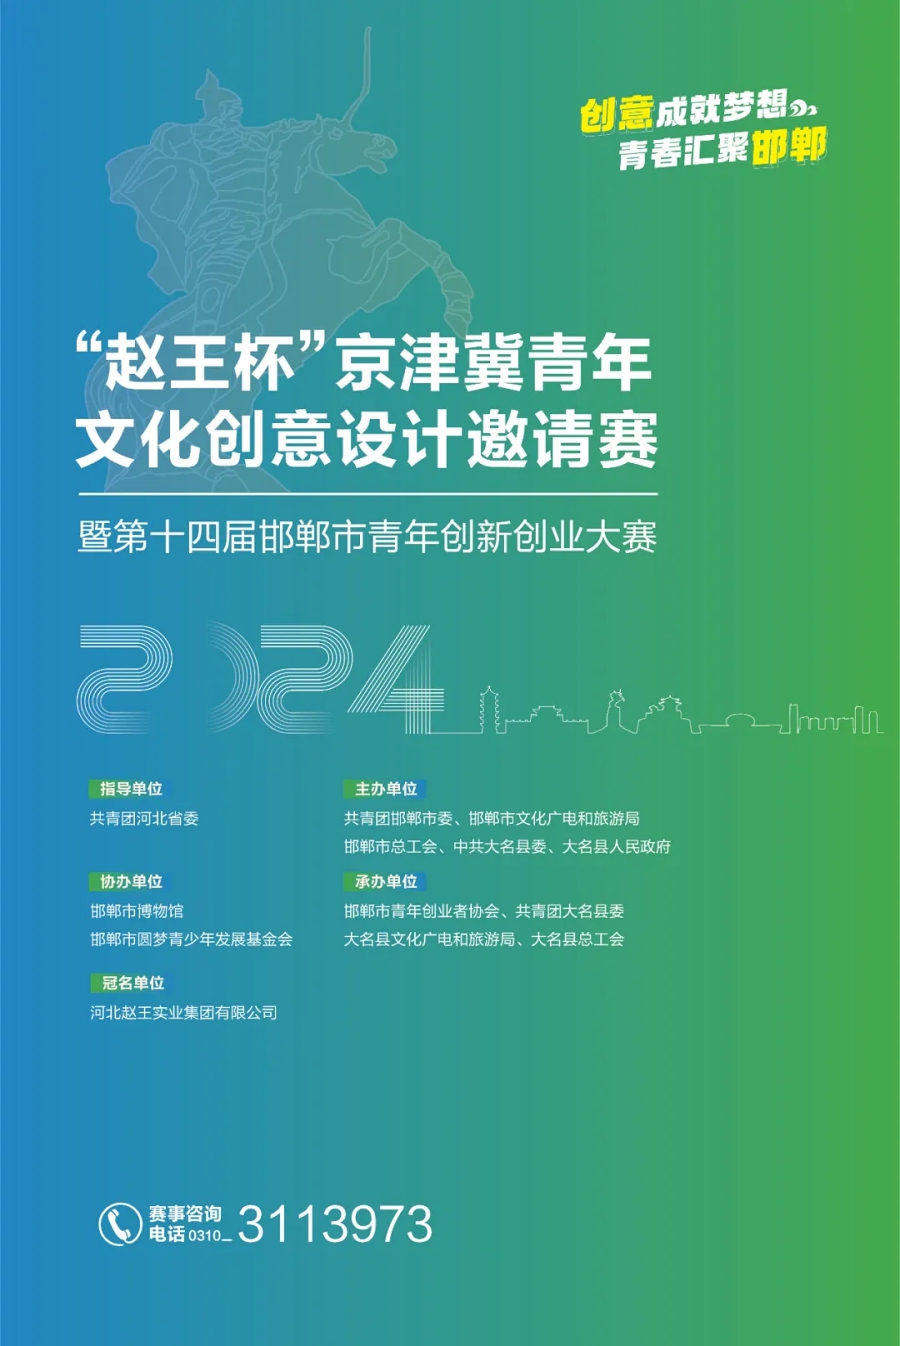 “赵王杯”京津冀青年文化创意设计邀请赛启动